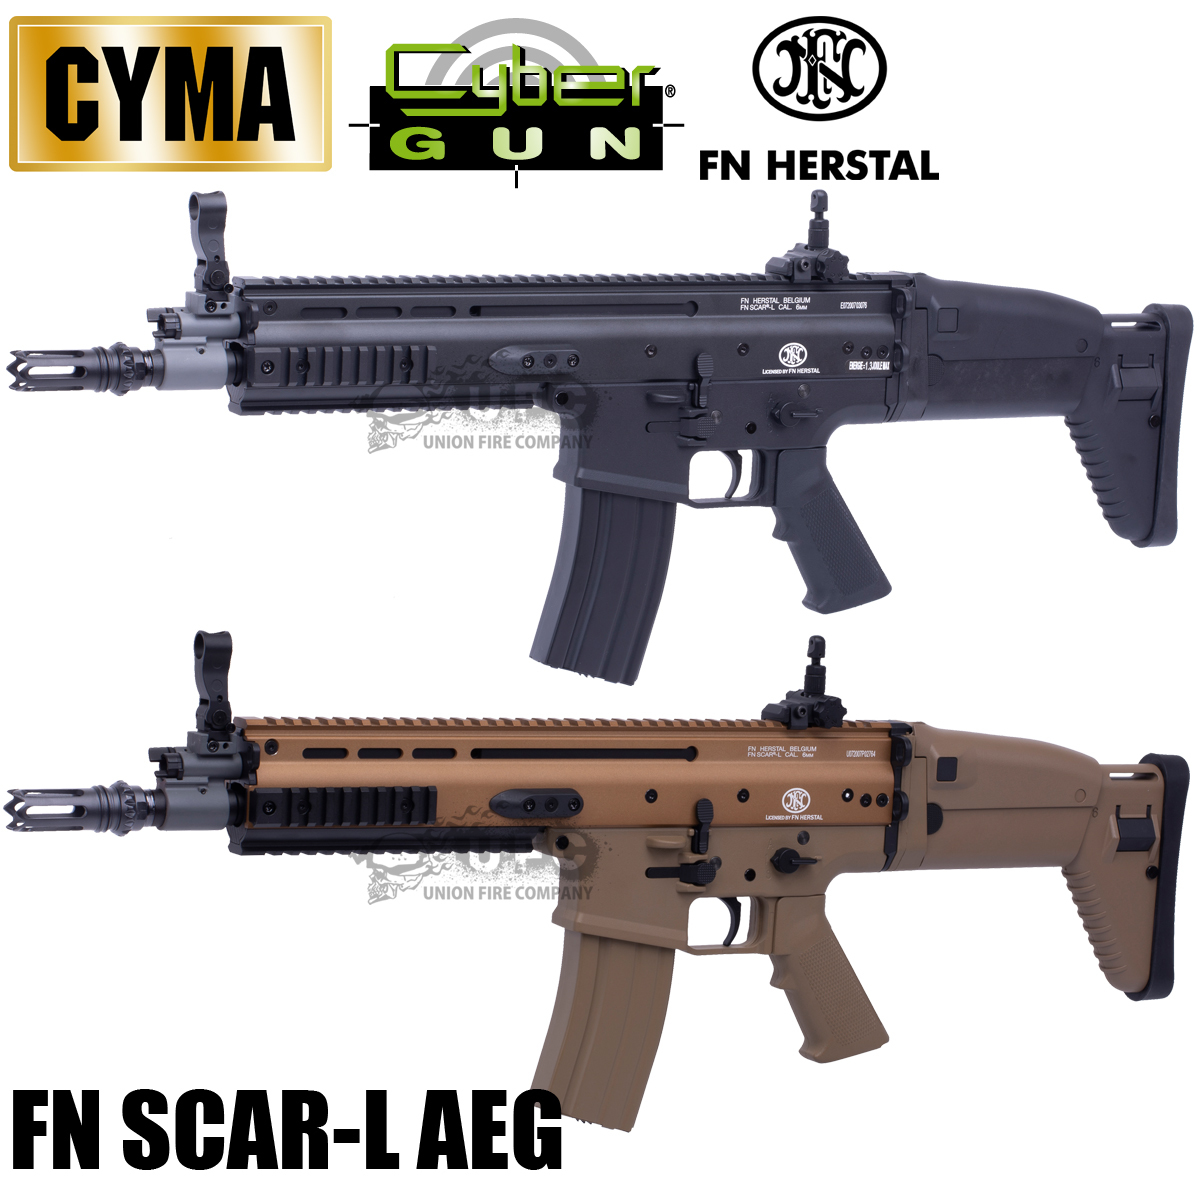 最新最全の 【中間決算セール】CYMA/CYBERGUN FN SCAR-L フルメタル電動ガン BK 電動ガン